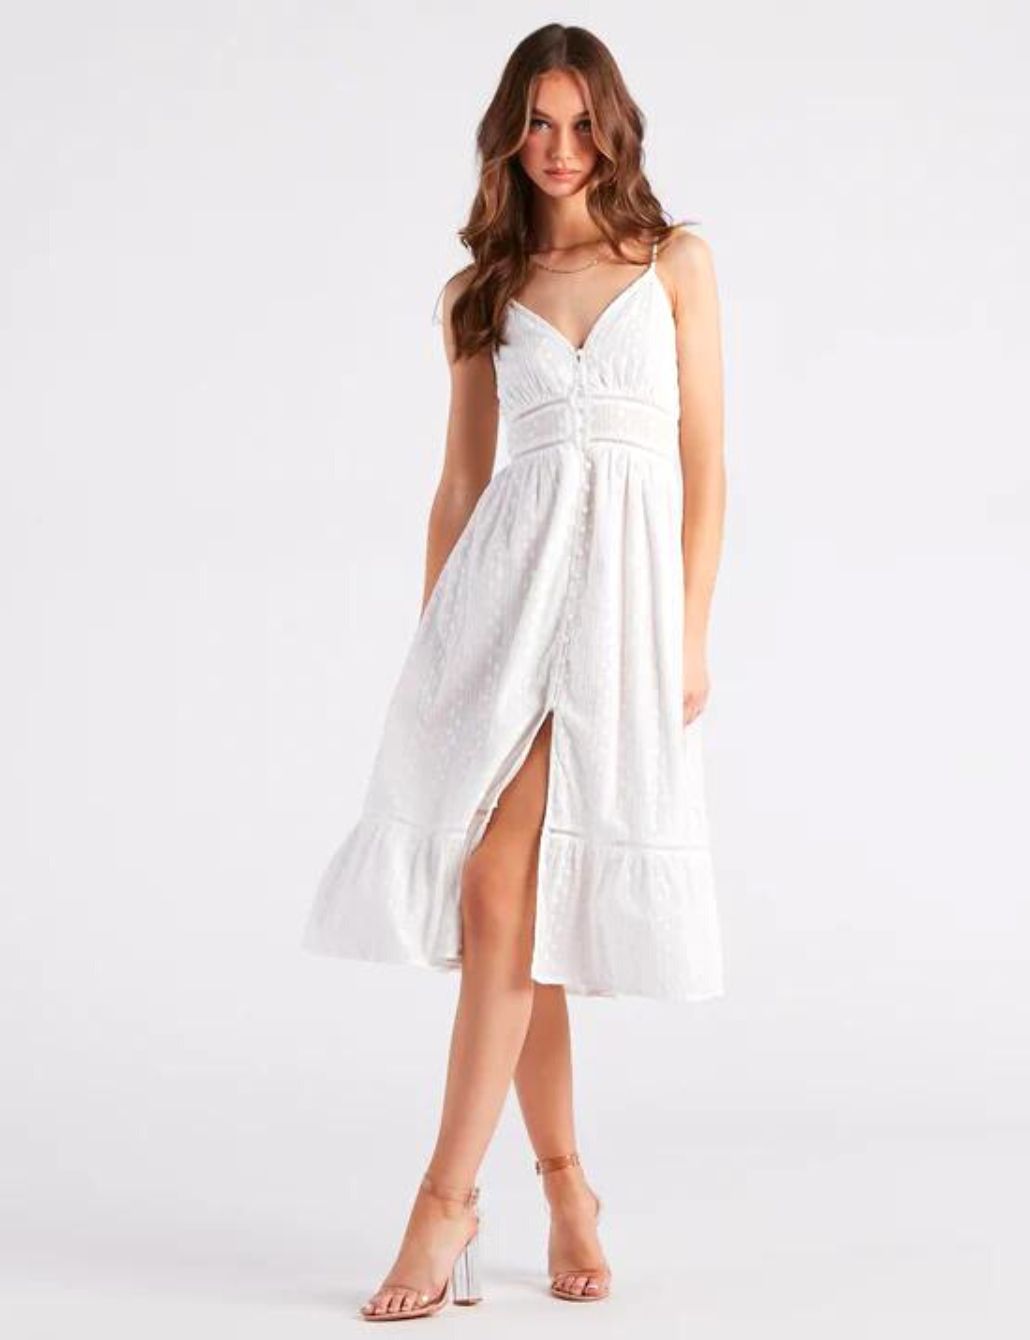 white sun dress